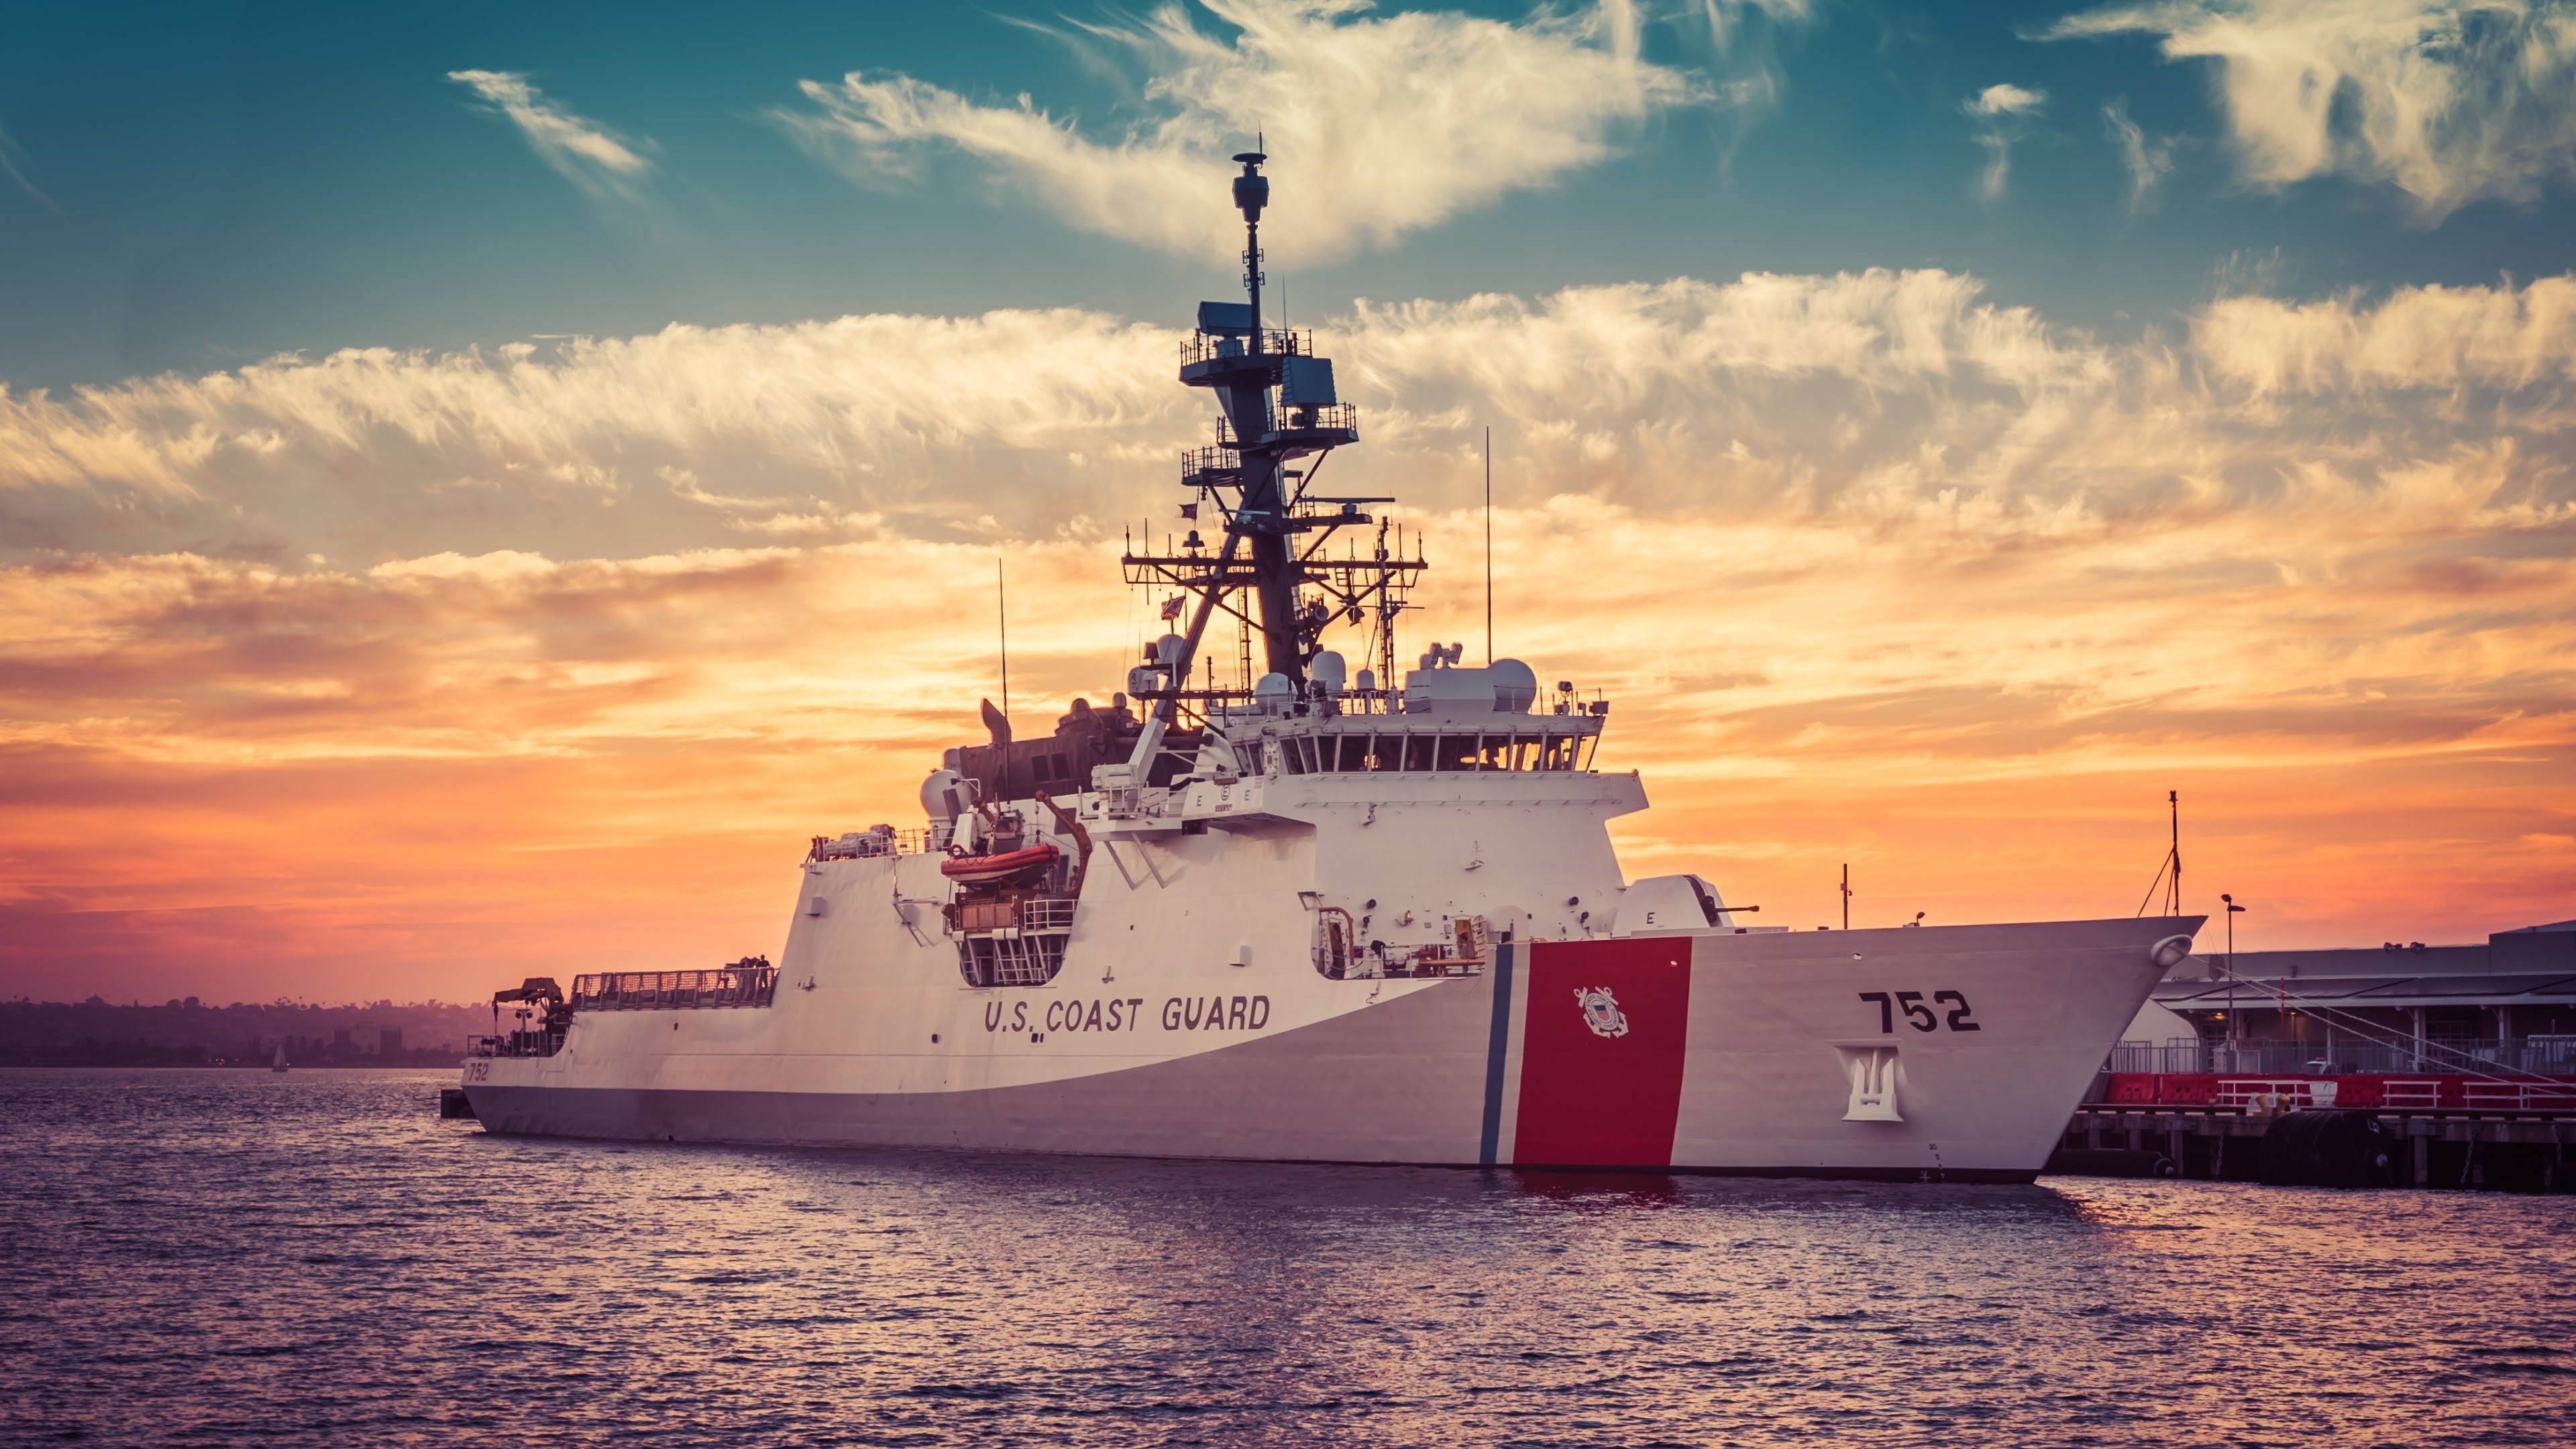 3840x2160 US Coast Guard Ship Wallpaper